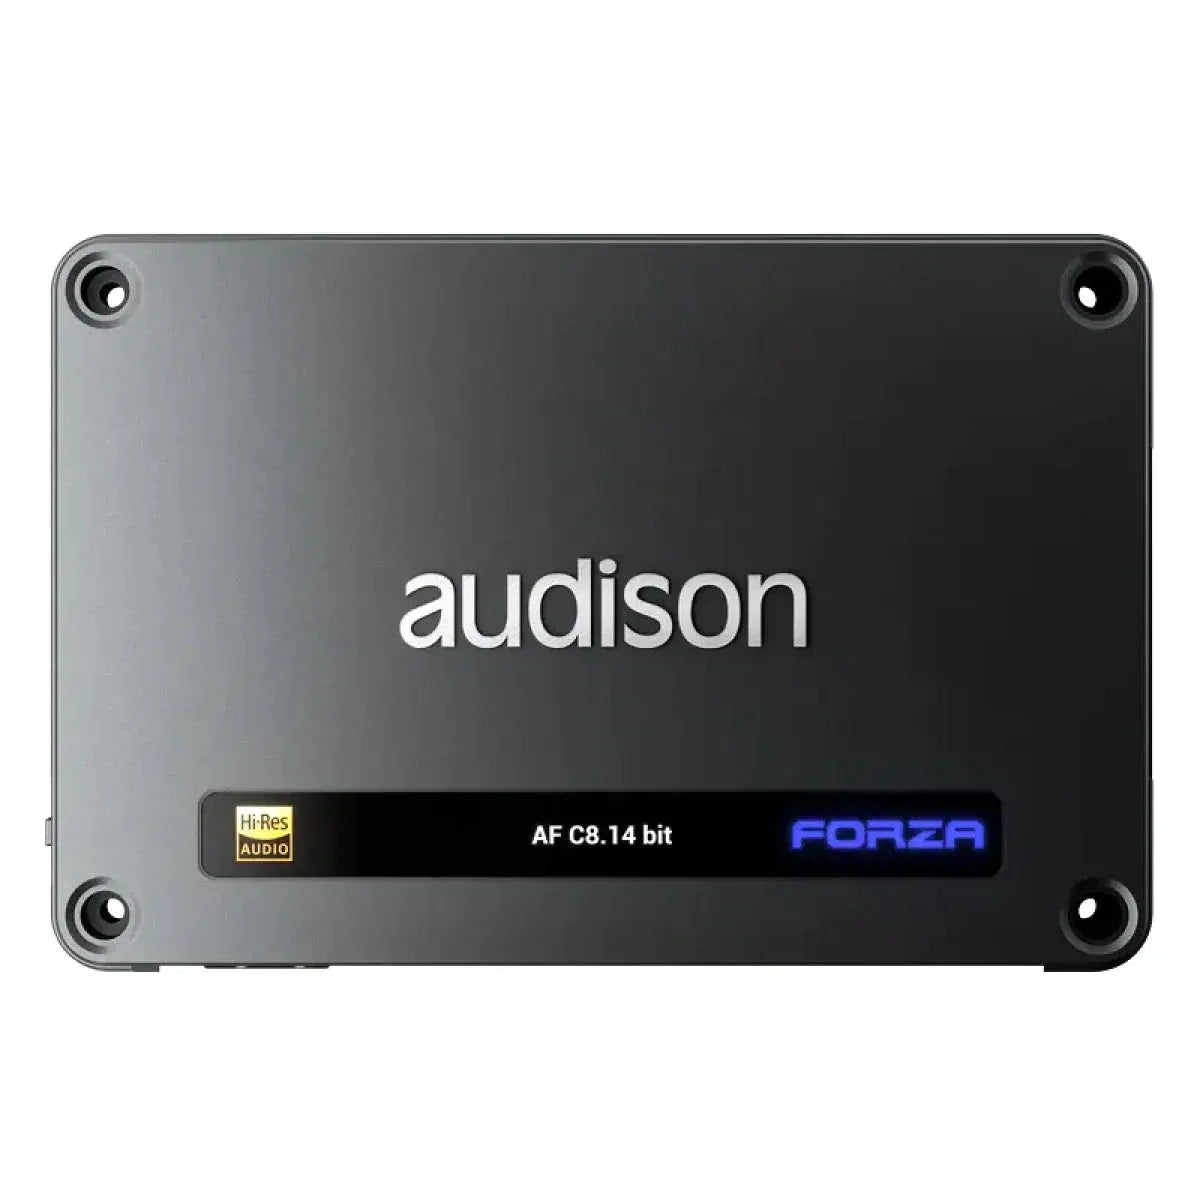 Audison-Forza AF C8.14 bit-8-canaux DSP-Amplificateur-Masori.fr